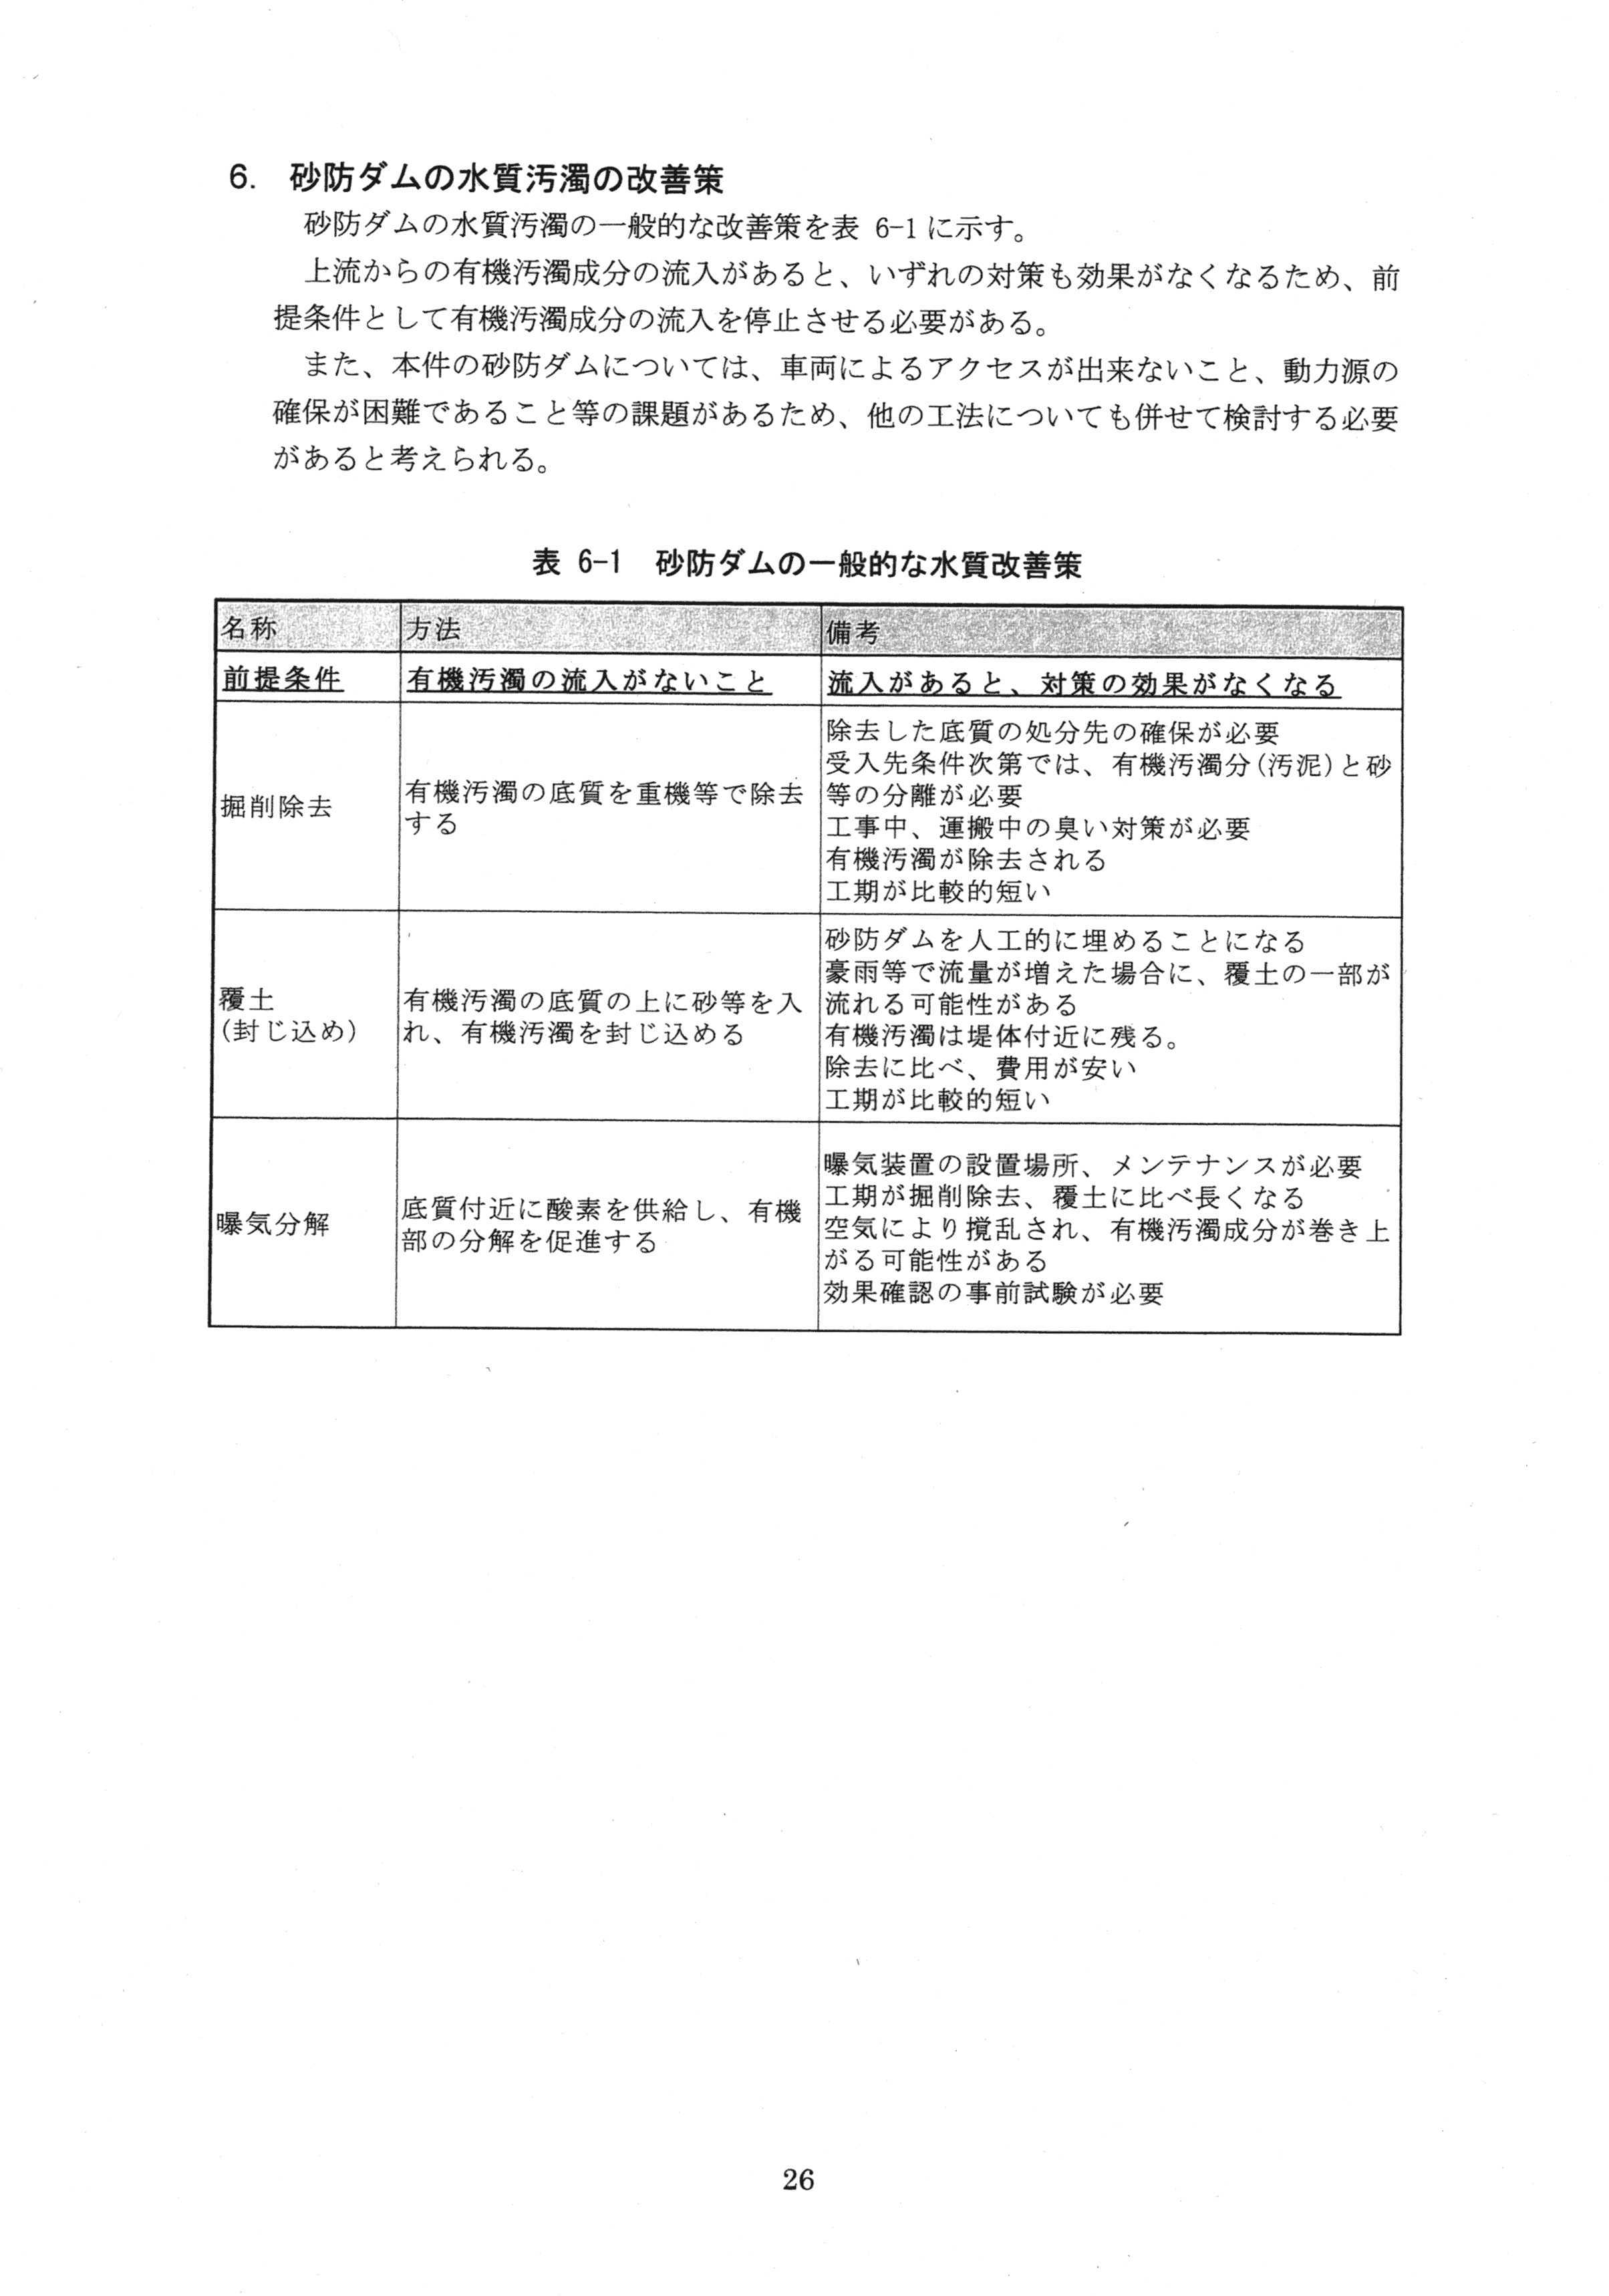 平成29年11月-赤田川水質汚濁状況調査報告書-28